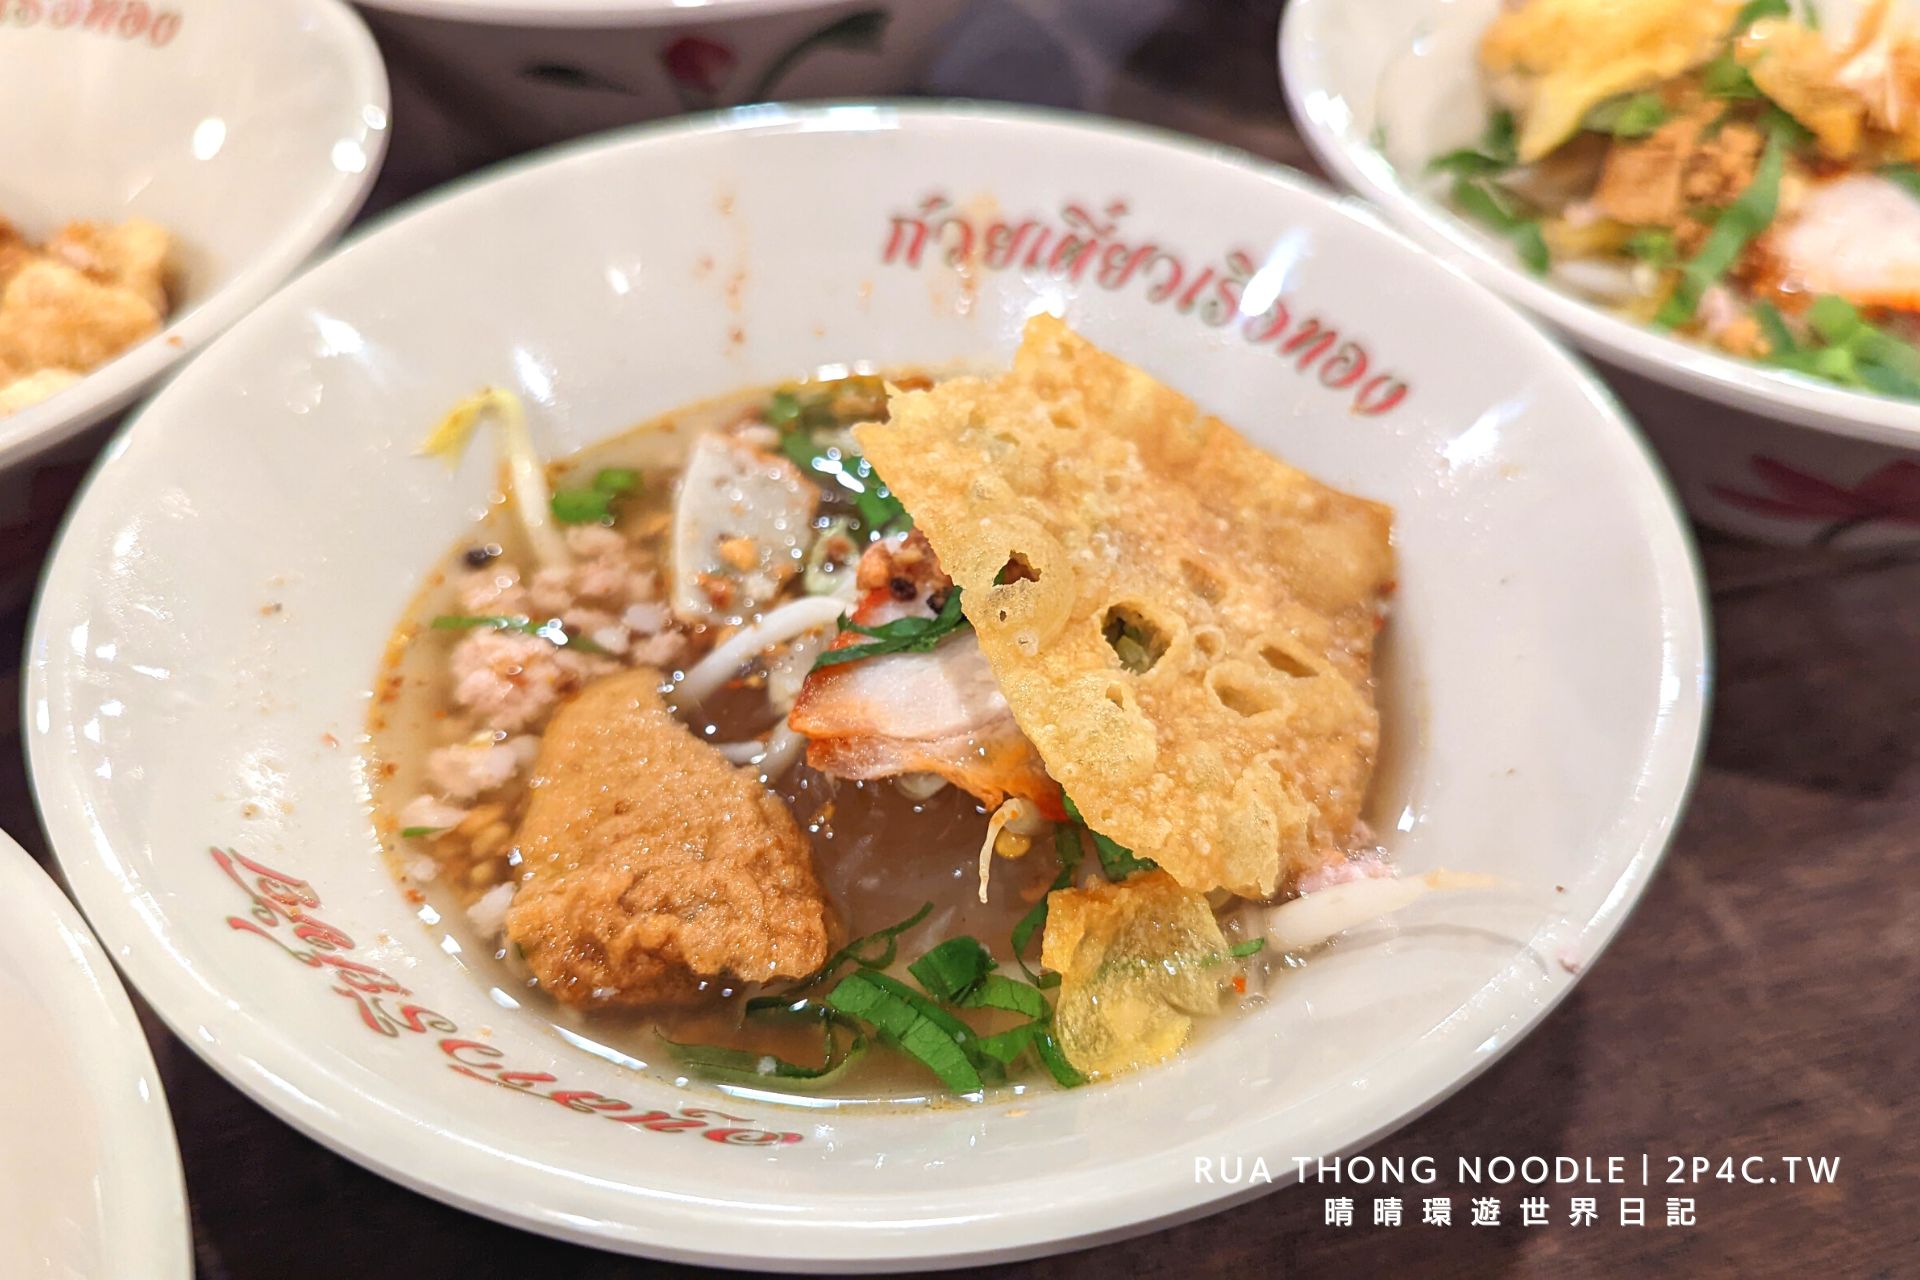 【泰國船麵】Rua Thong Noodle 來勝利船麵一條街挑戰！一碗16泰銖便宜好吃